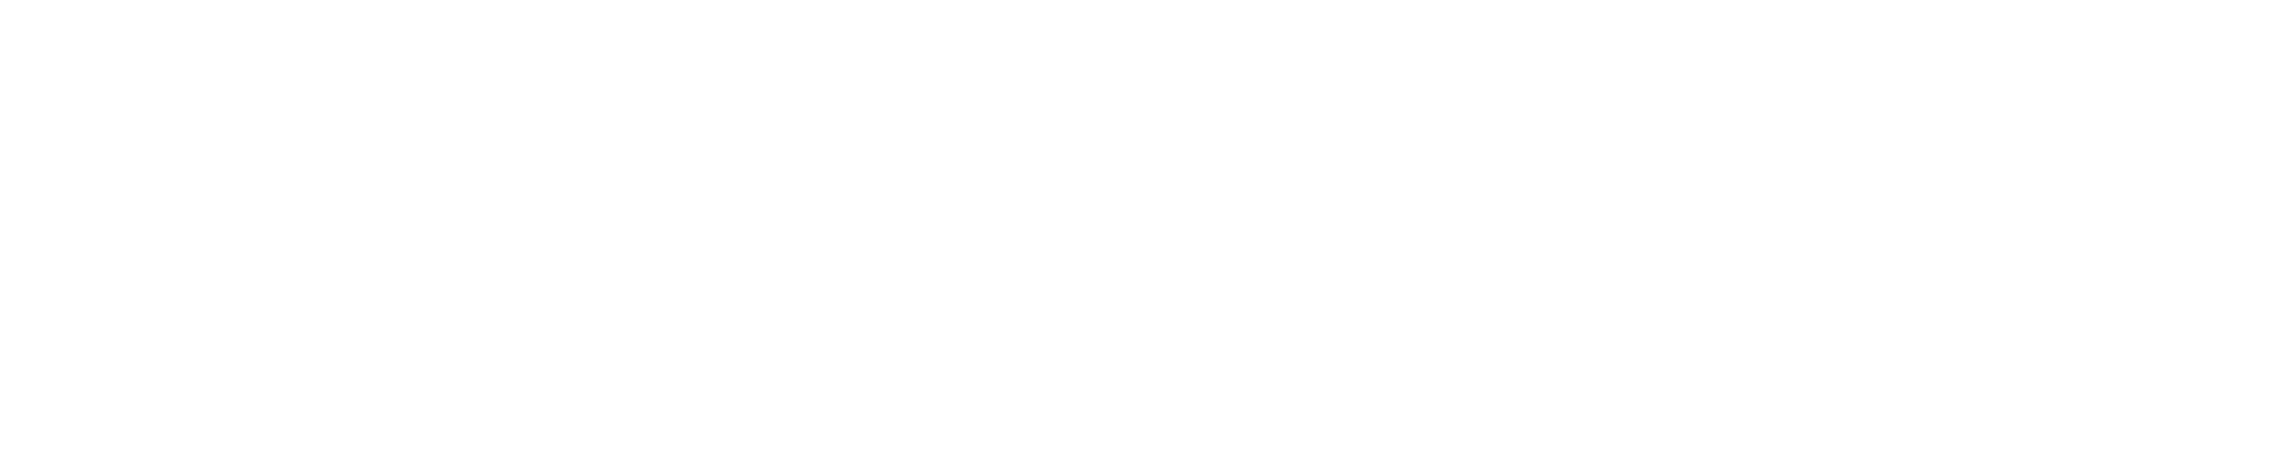 光华教育集团